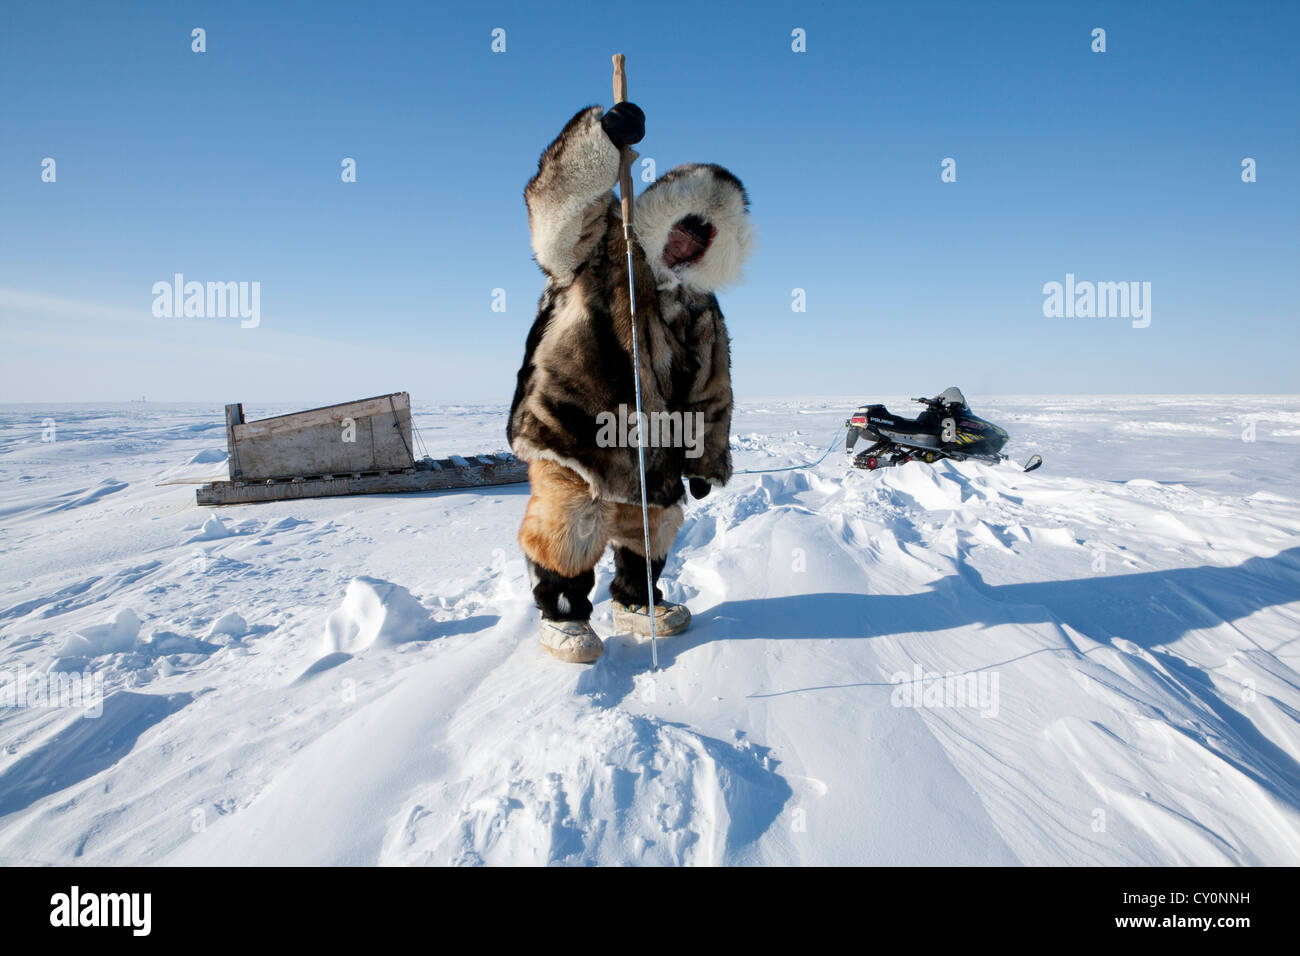 Los inuits están cazando en el northpole Foto de stock